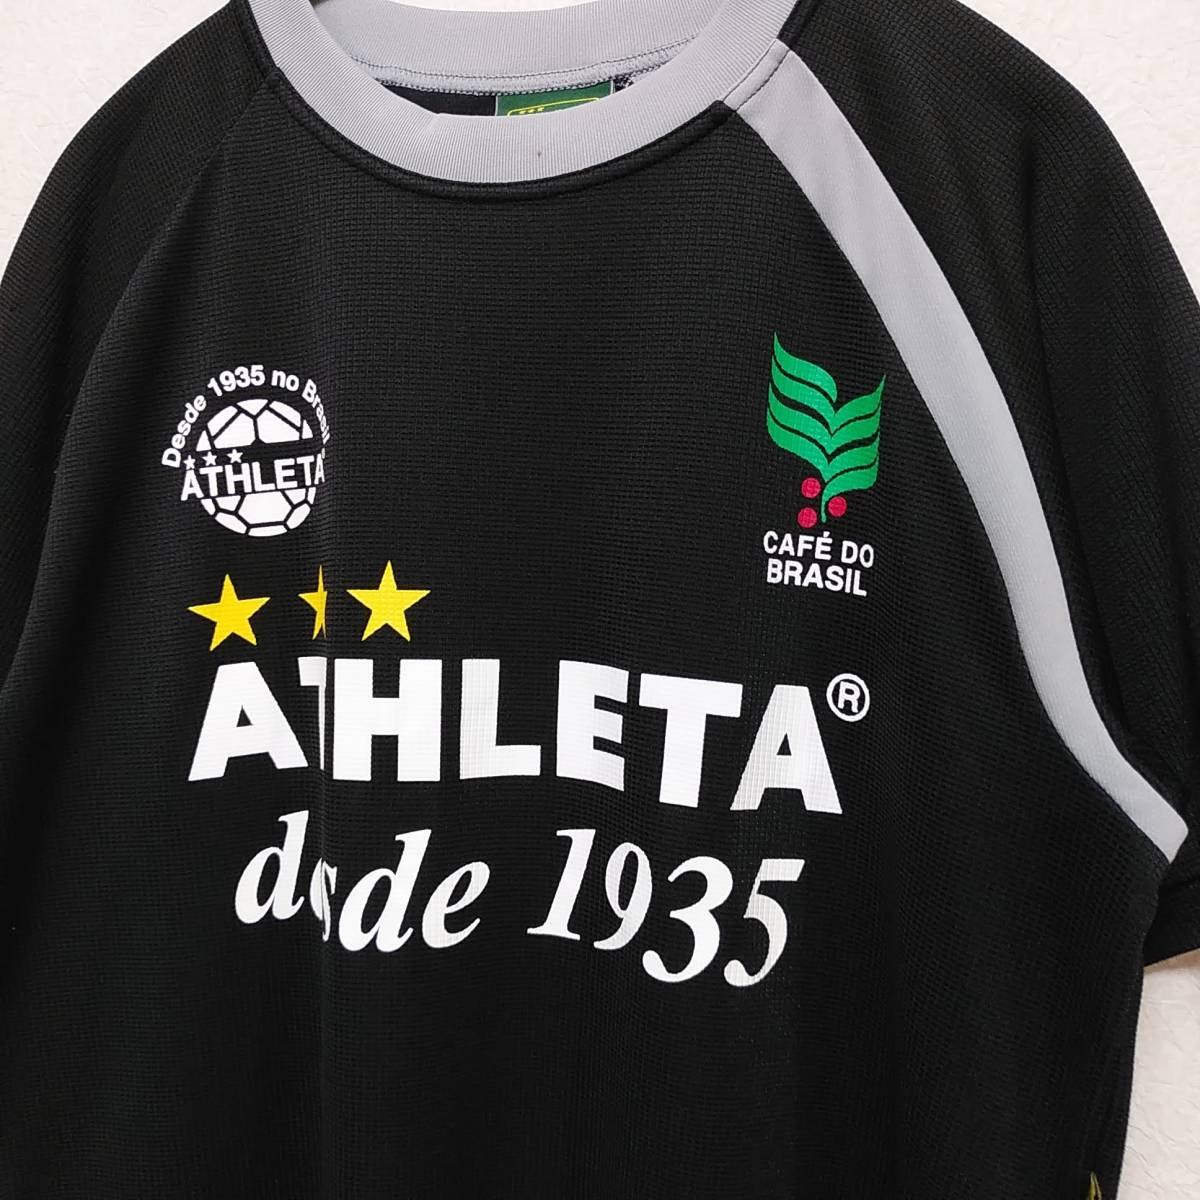 正式的 ATHLETA サッカー フットサル プラクティスシャツ ブラジル